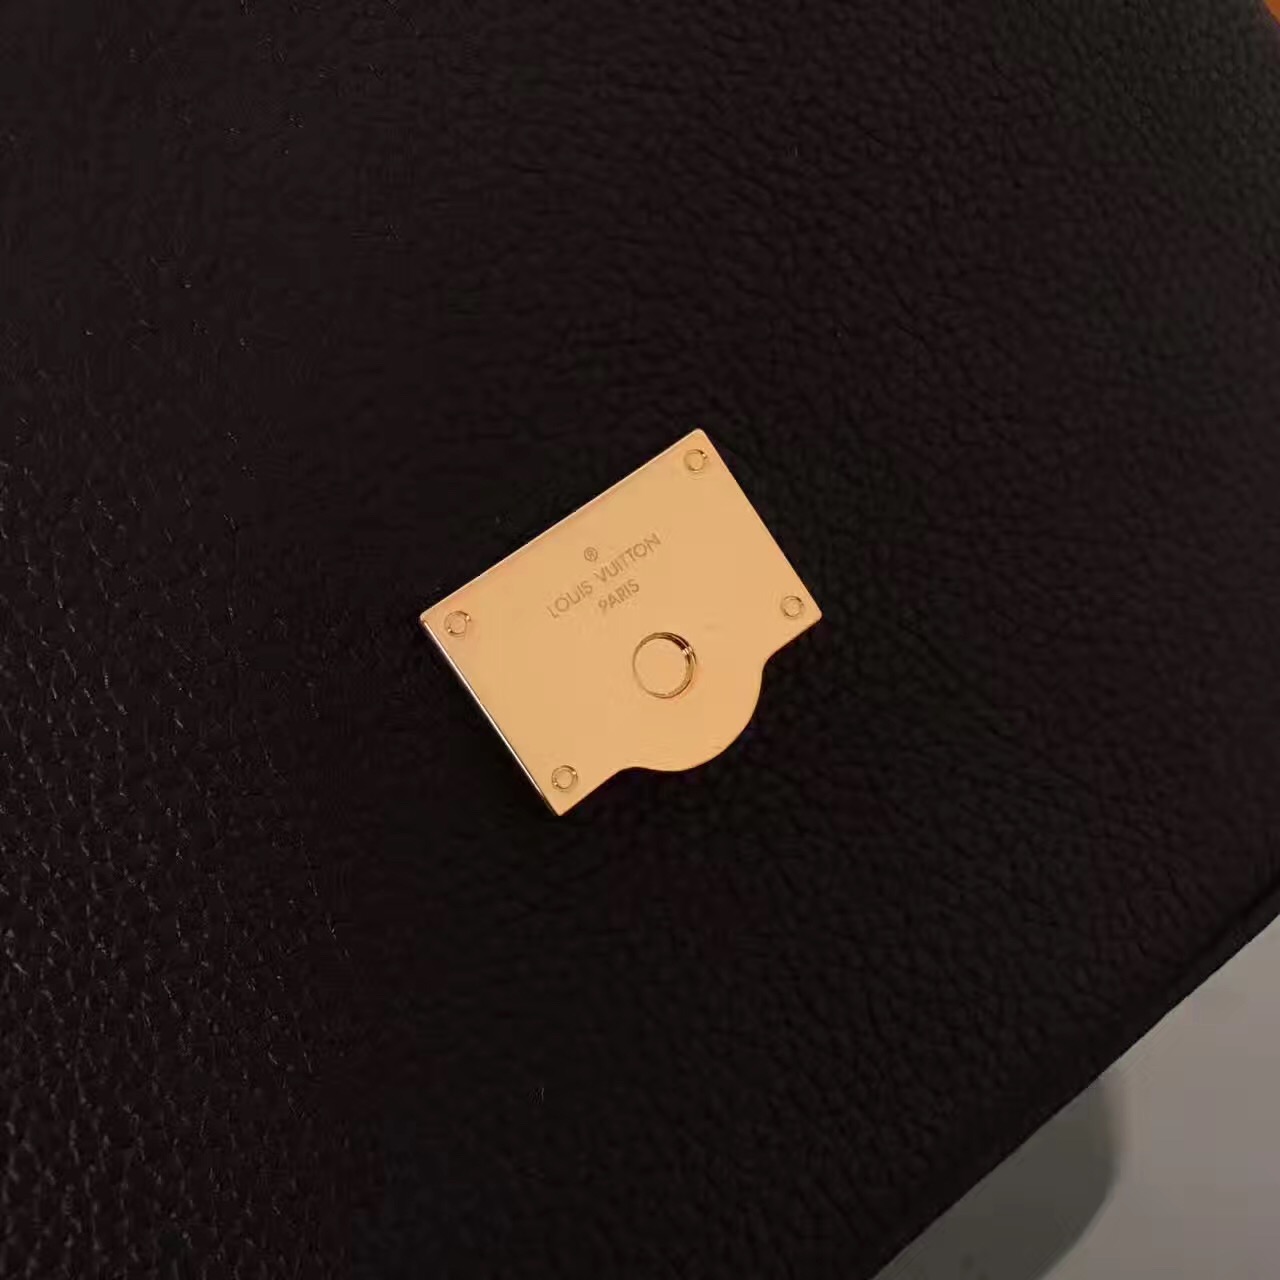 LV Louis Vuitton black leather shoulder handbags